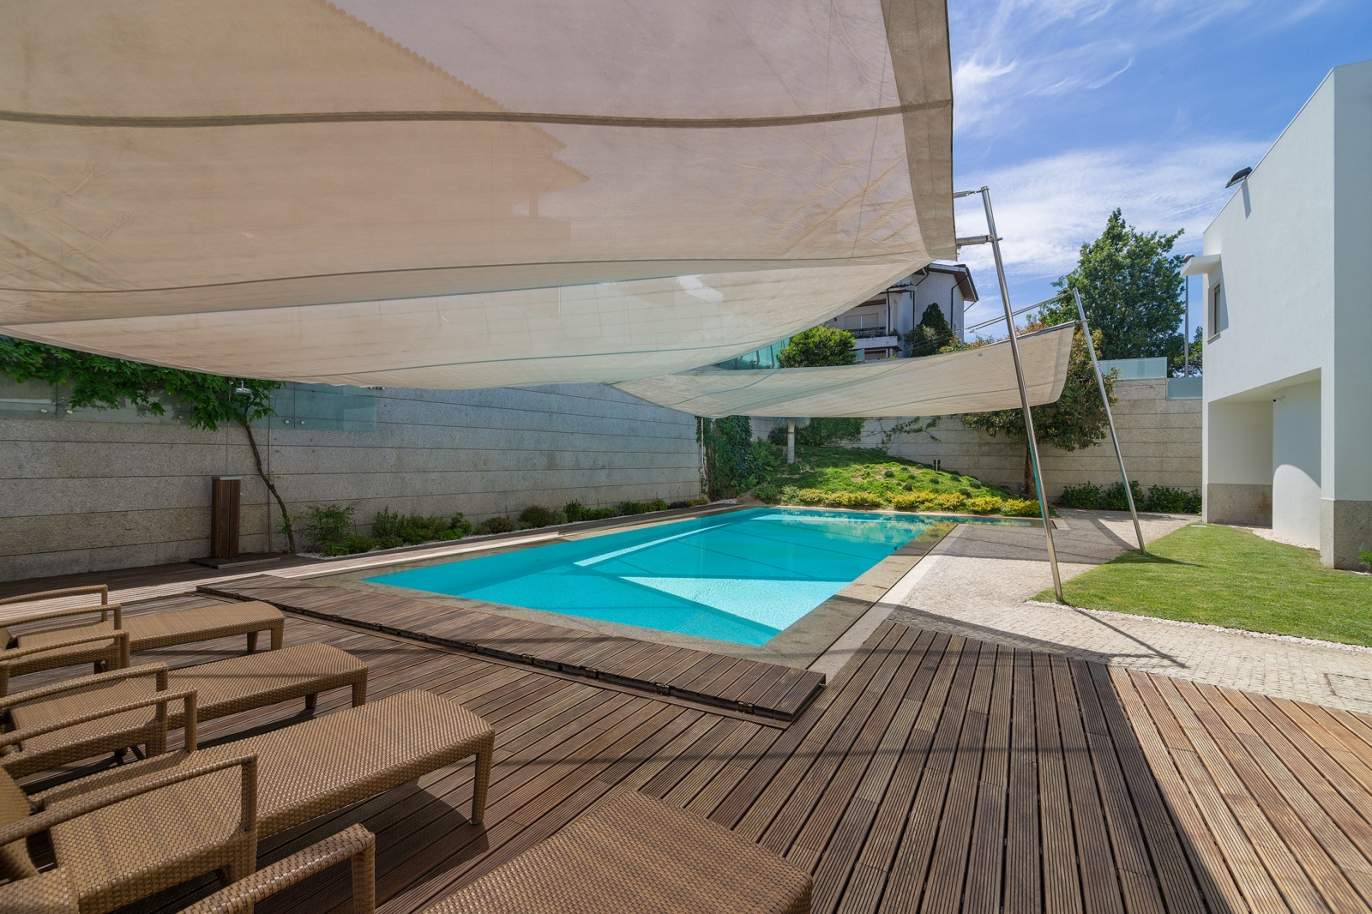 Villa de 3 habitaciones, con piscina y jardín, en venta, en Trofa, Porto, Portugal_154944